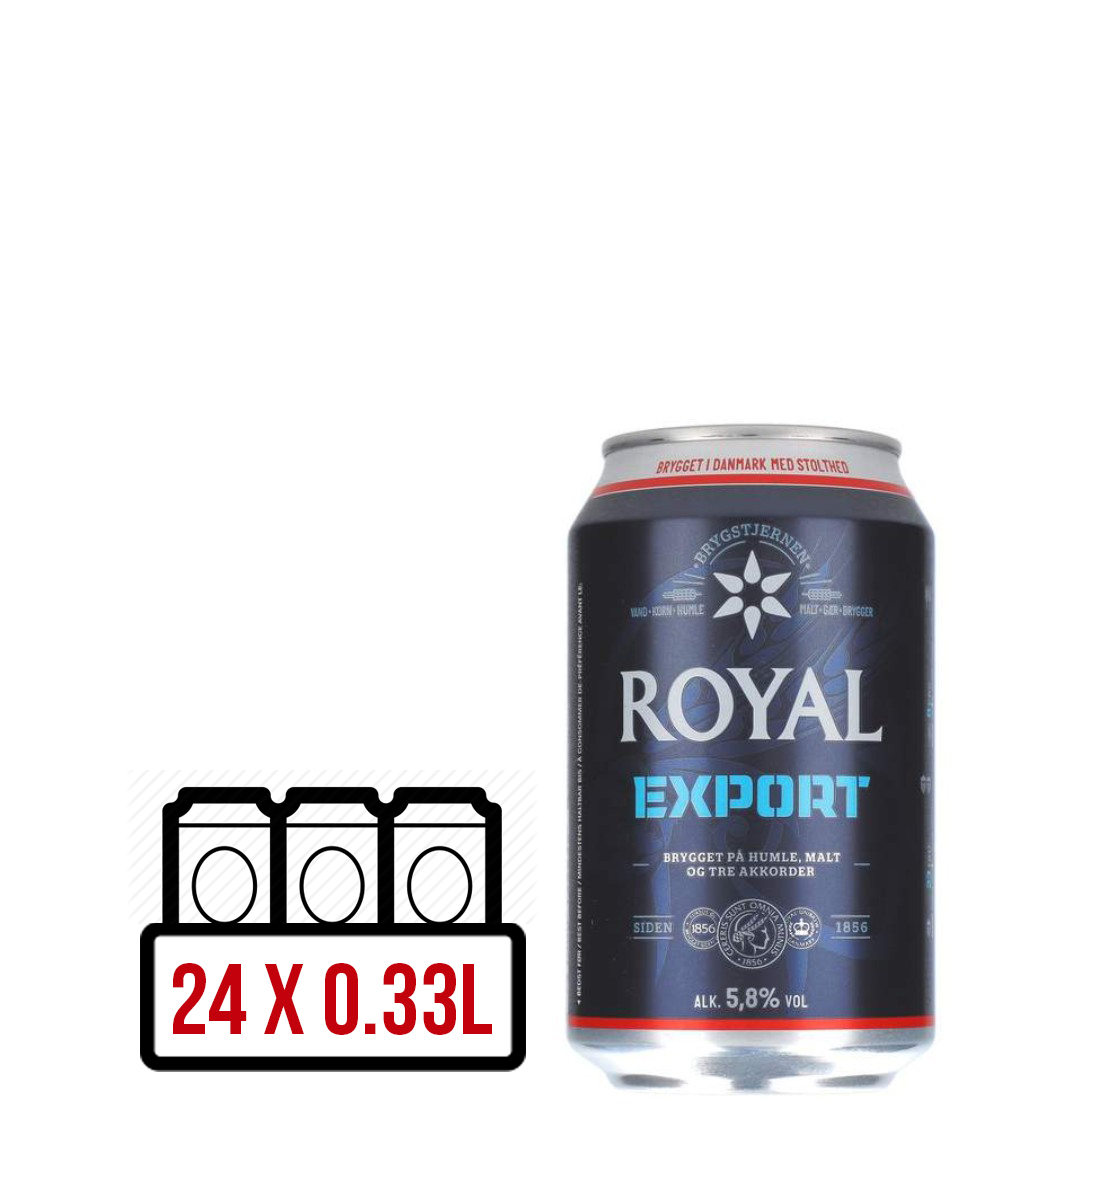 Royal Export BAX 24 dz. x 0.33L